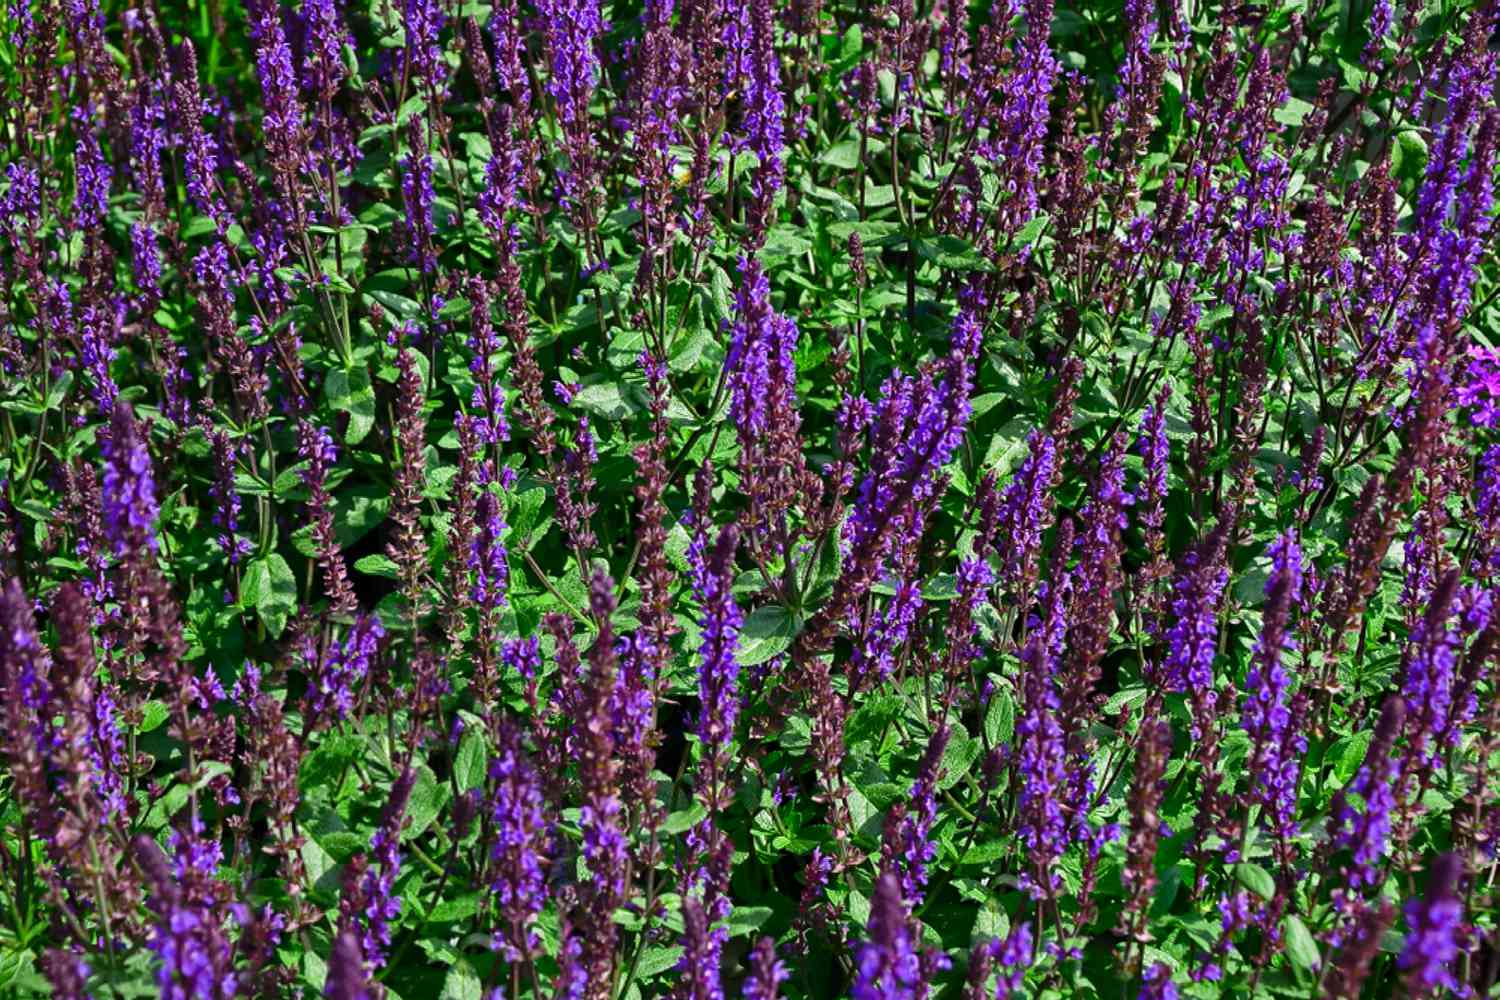 Caradonna salvia Pflanzen mit hohen violetten Blütenähren und gemischt mit Blättern